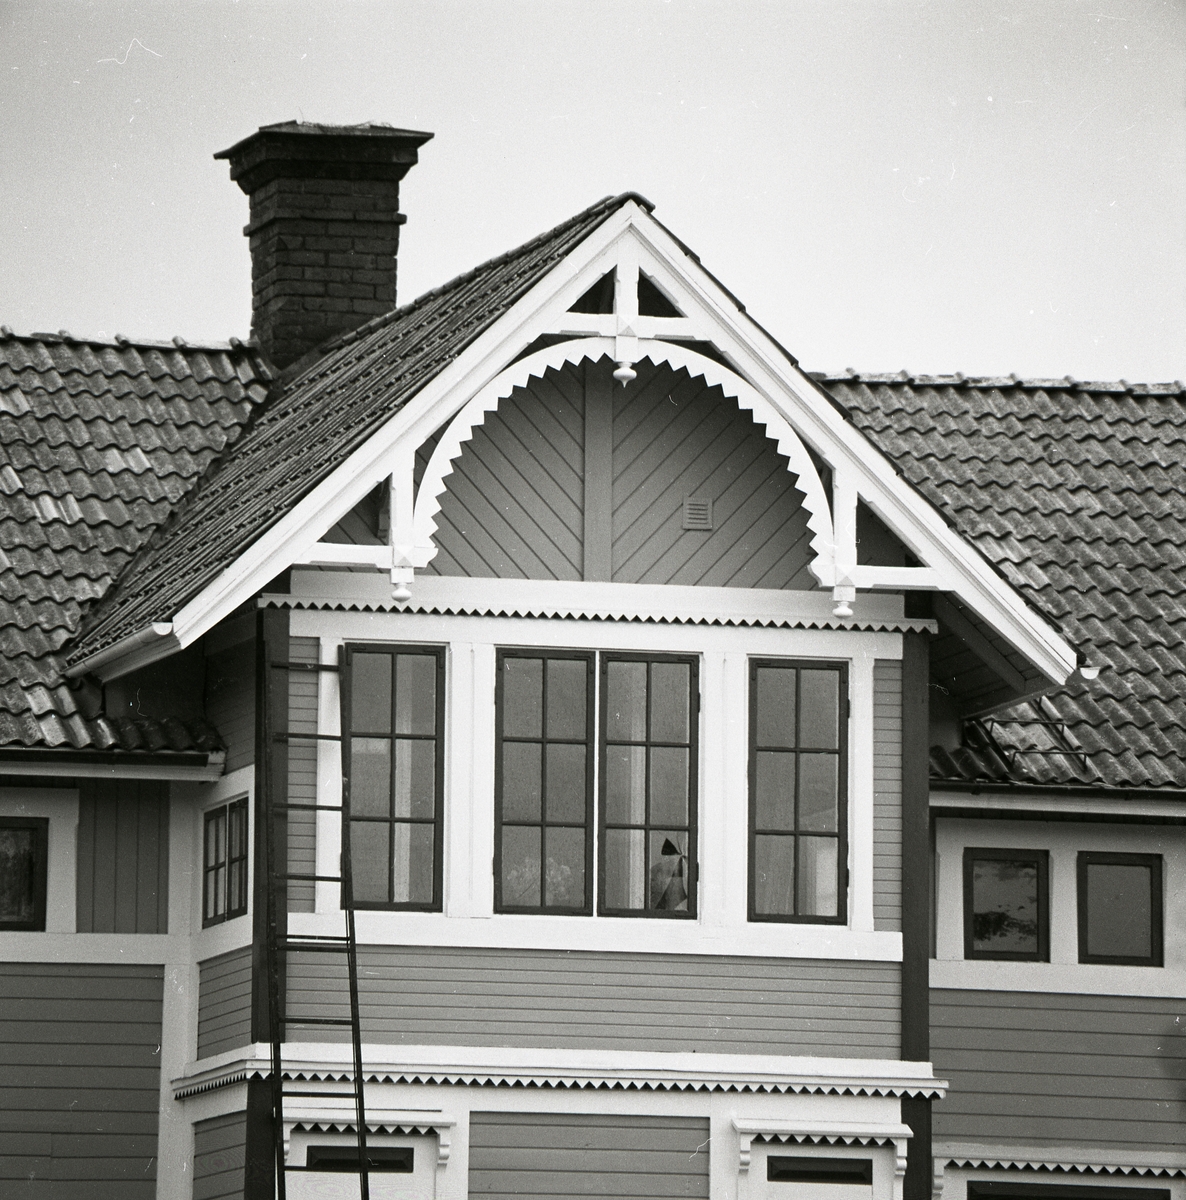 Utvändig utsmyckning på övervåning av ett boningshus i trä med liggande panel som fasad, 1980. Inglasad veranda på övervåningen.